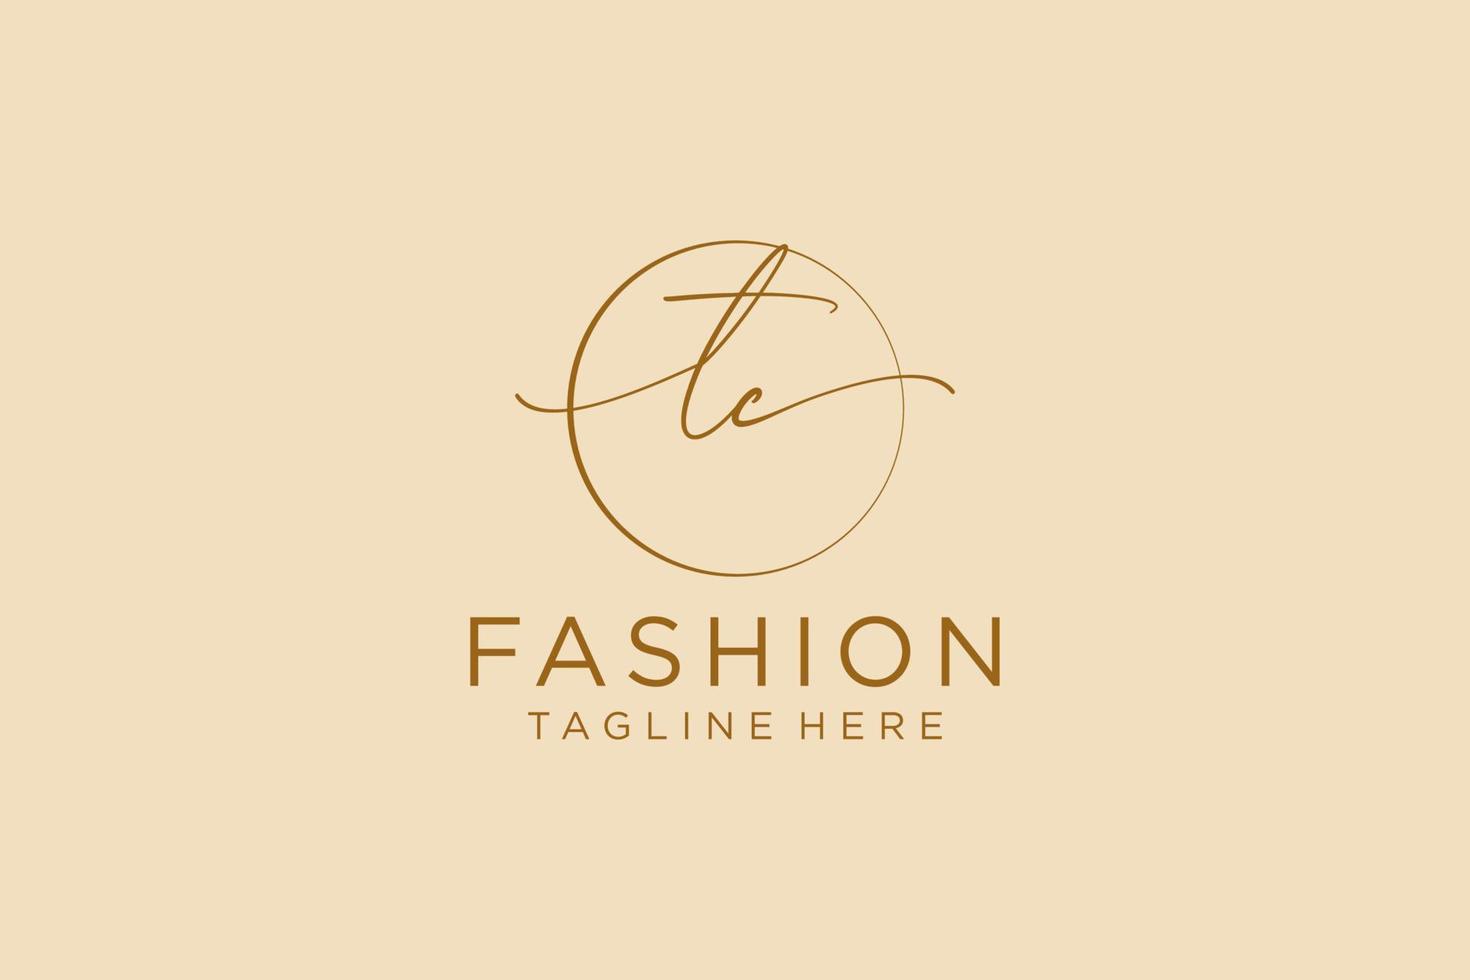 första tc feminin logotyp skönhet monogram och elegant logotyp design, handstil logotyp av första signatur, bröllop, mode, blommig och botanisk med kreativ mall. vektor